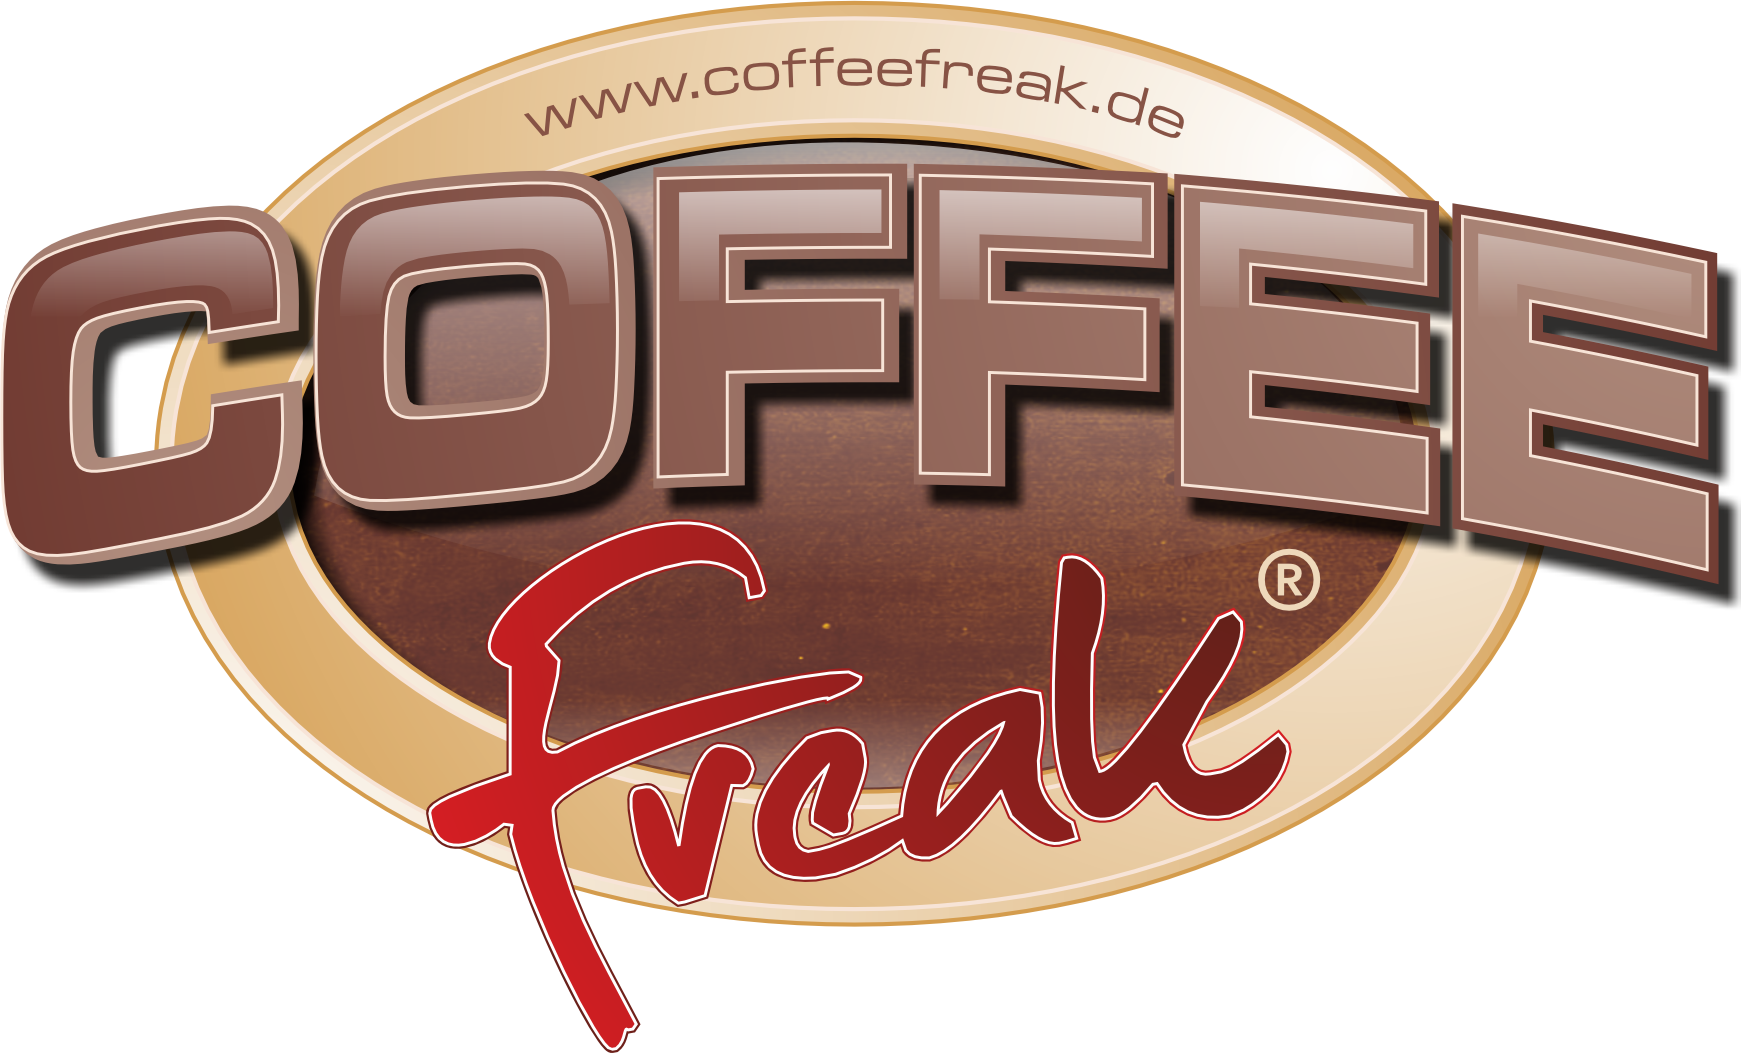 CoffeeFreak